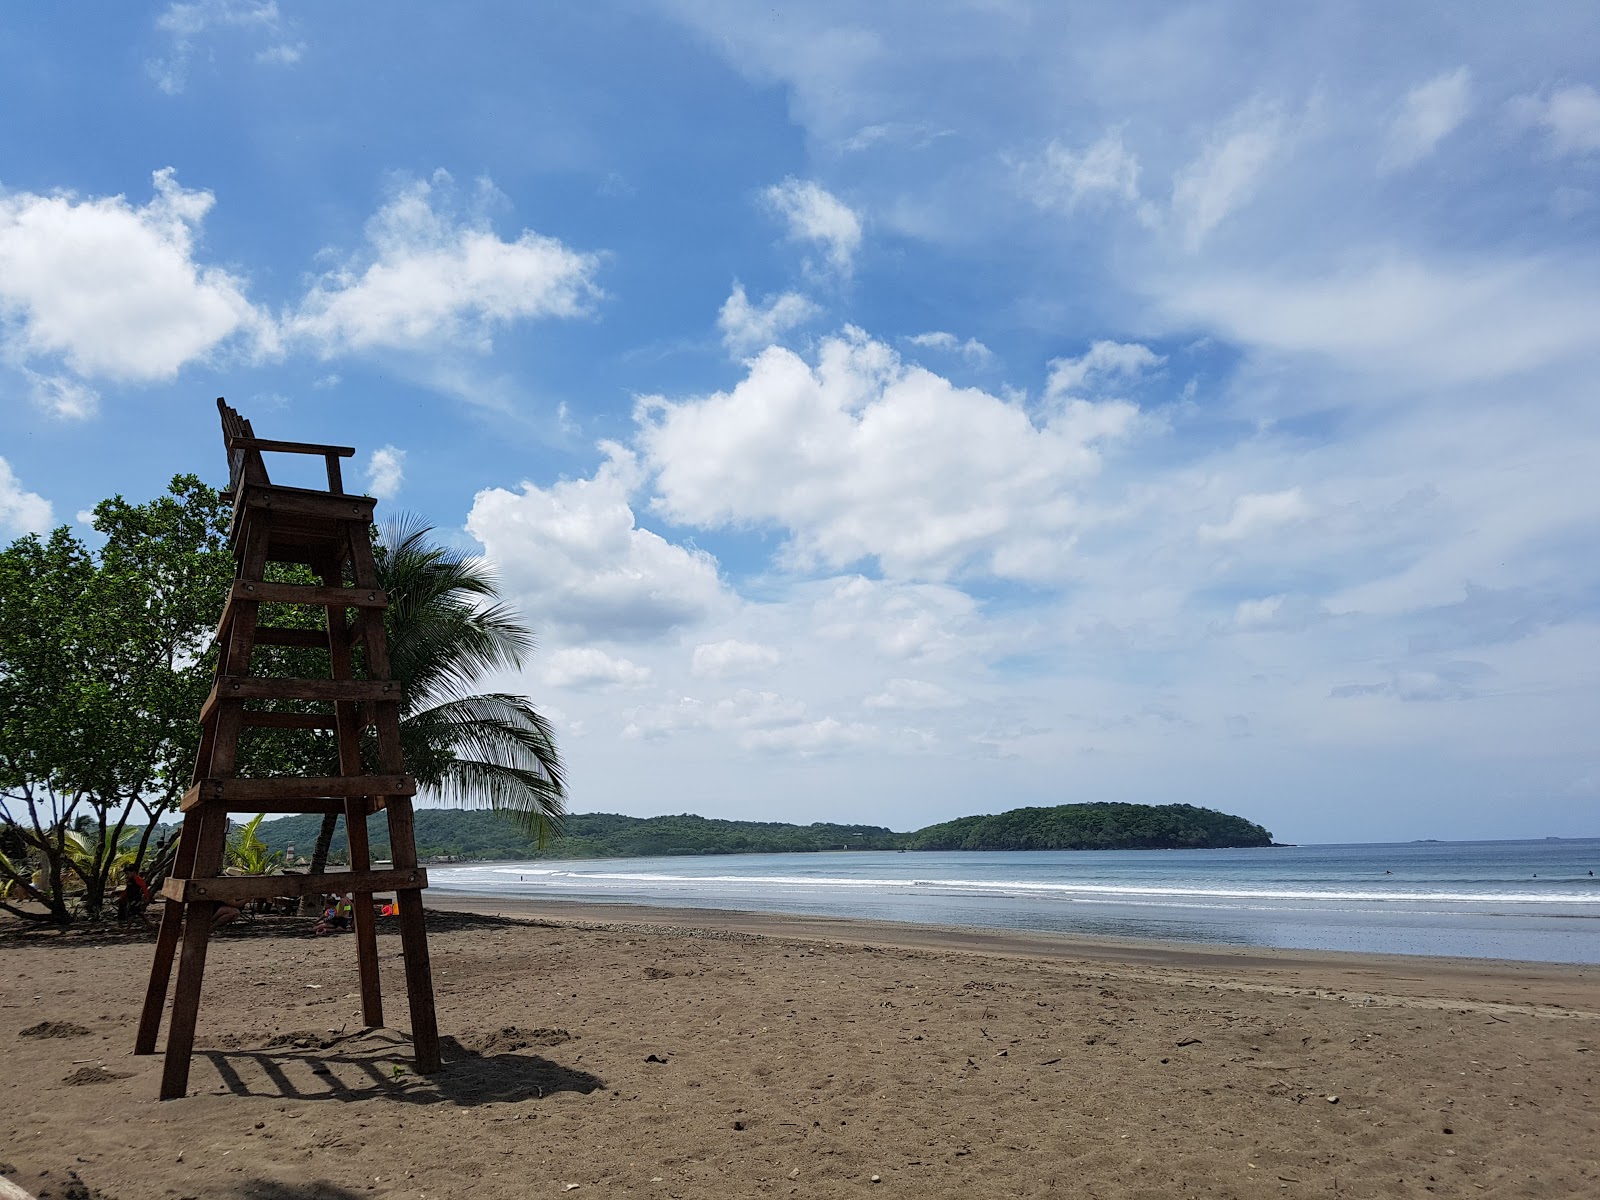 Foto af Venao Beach - populært sted blandt afslapningskendere